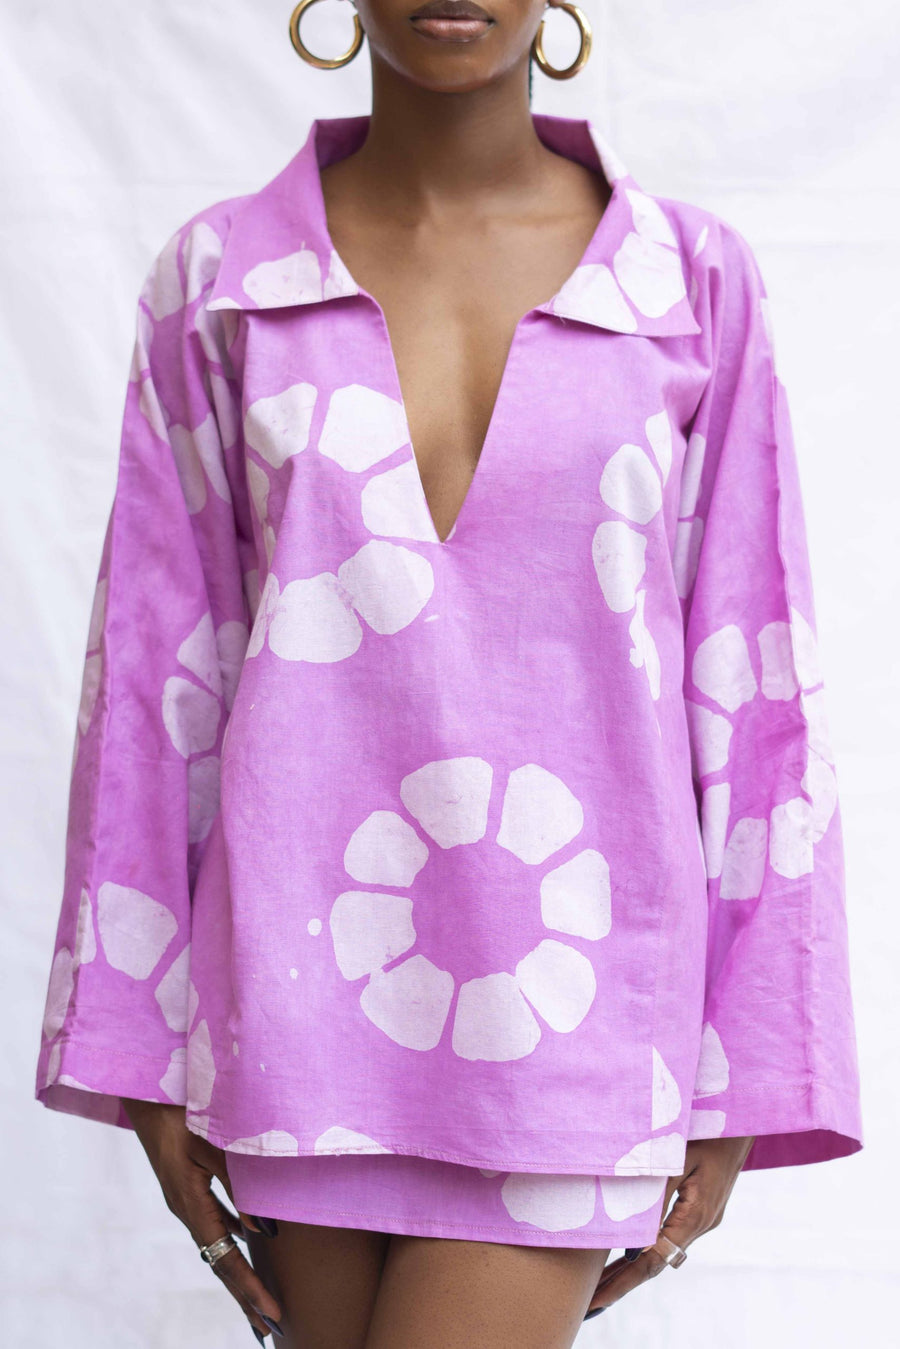 Nyosi Brand Gana Set, V-Neck Shirt with Matching Mini Skirt